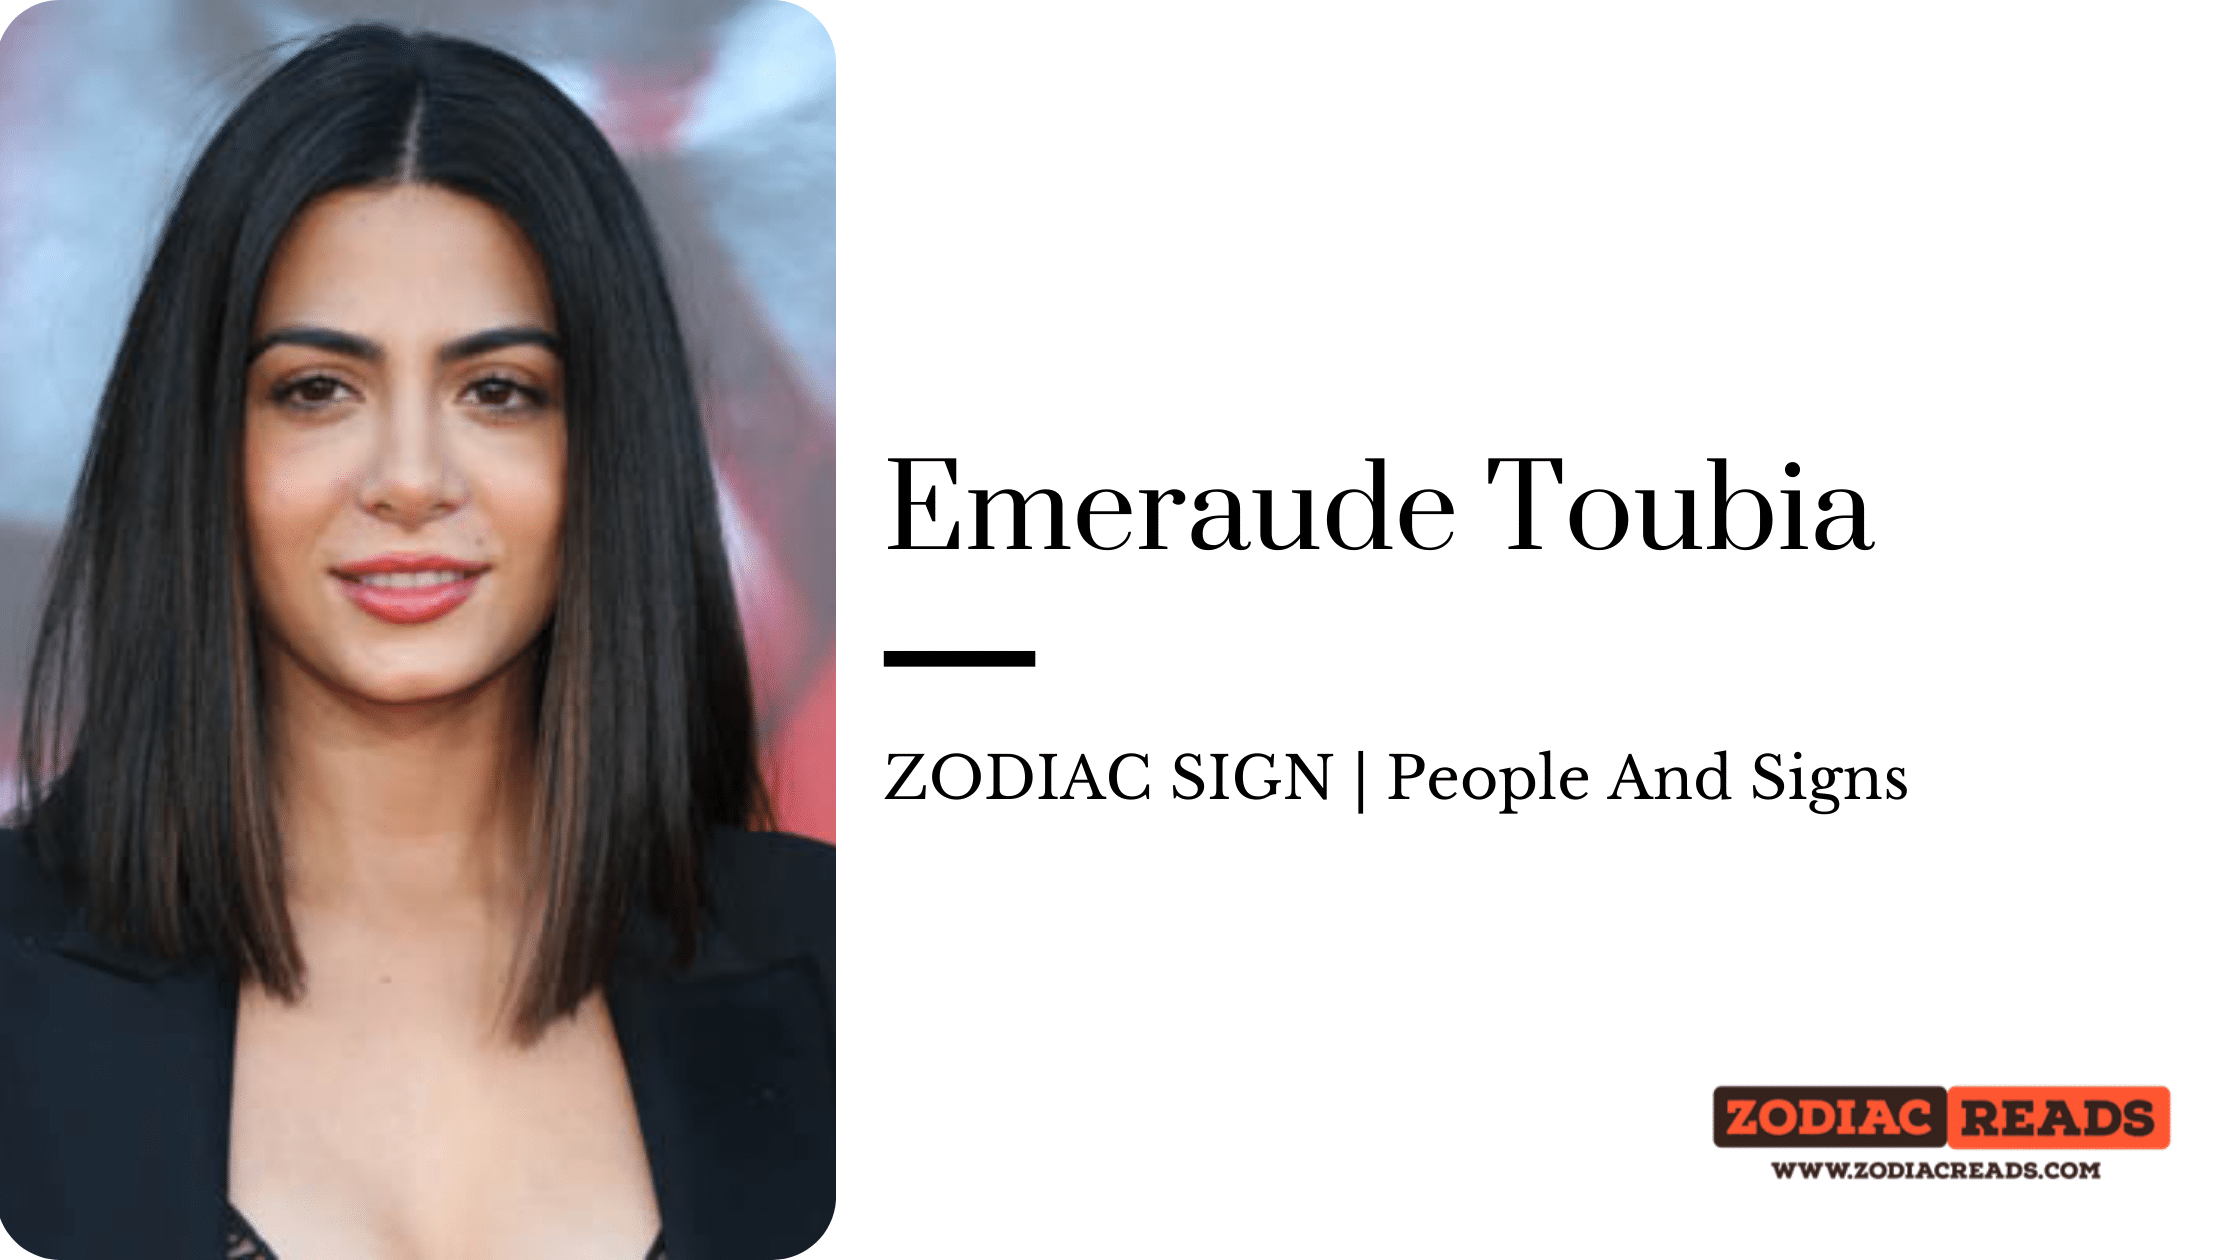 Emeraude Toubia zodiac